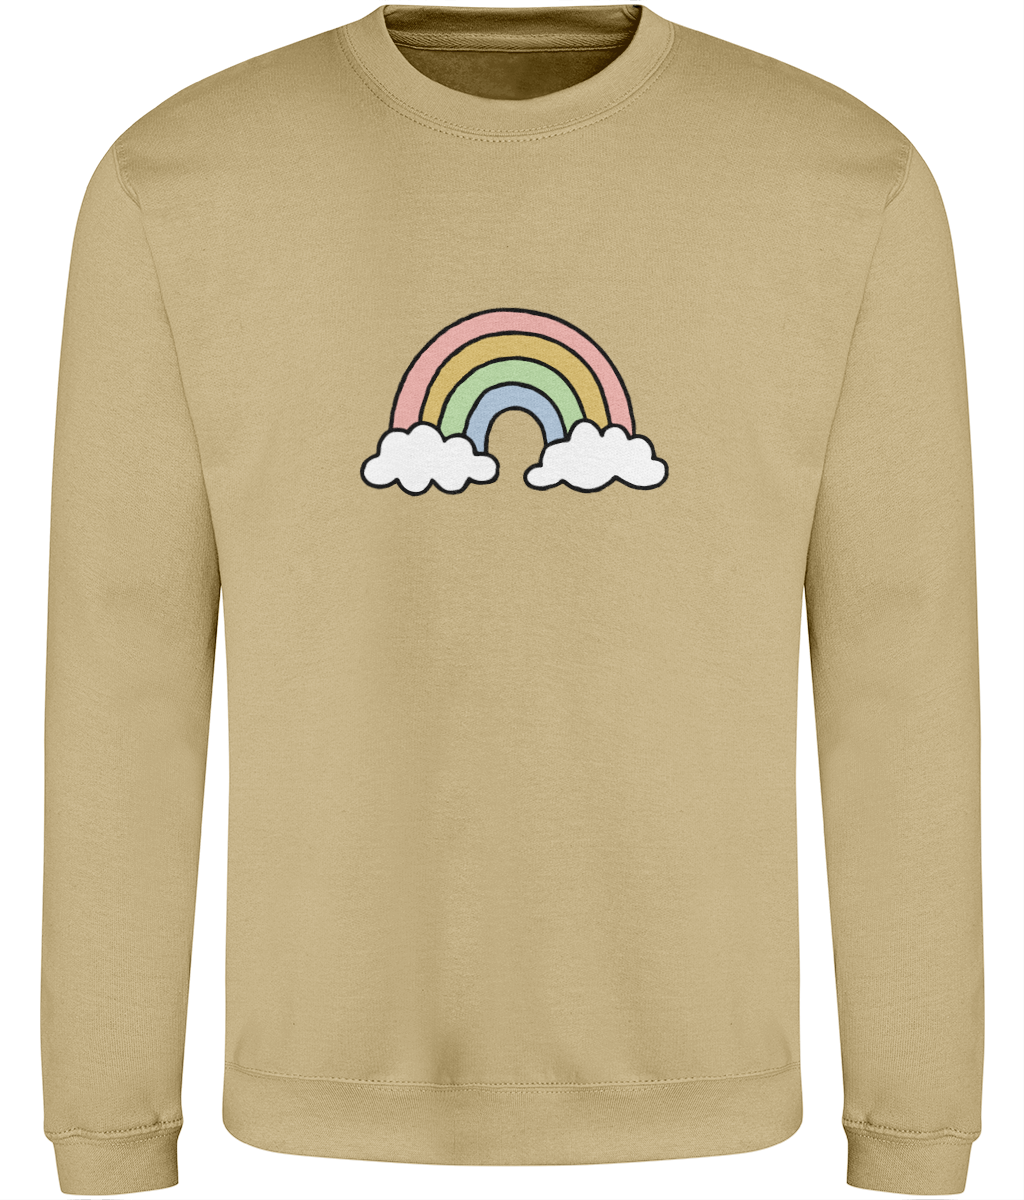 Rainbow - Adult Sweatshirt - Multi Colour Options